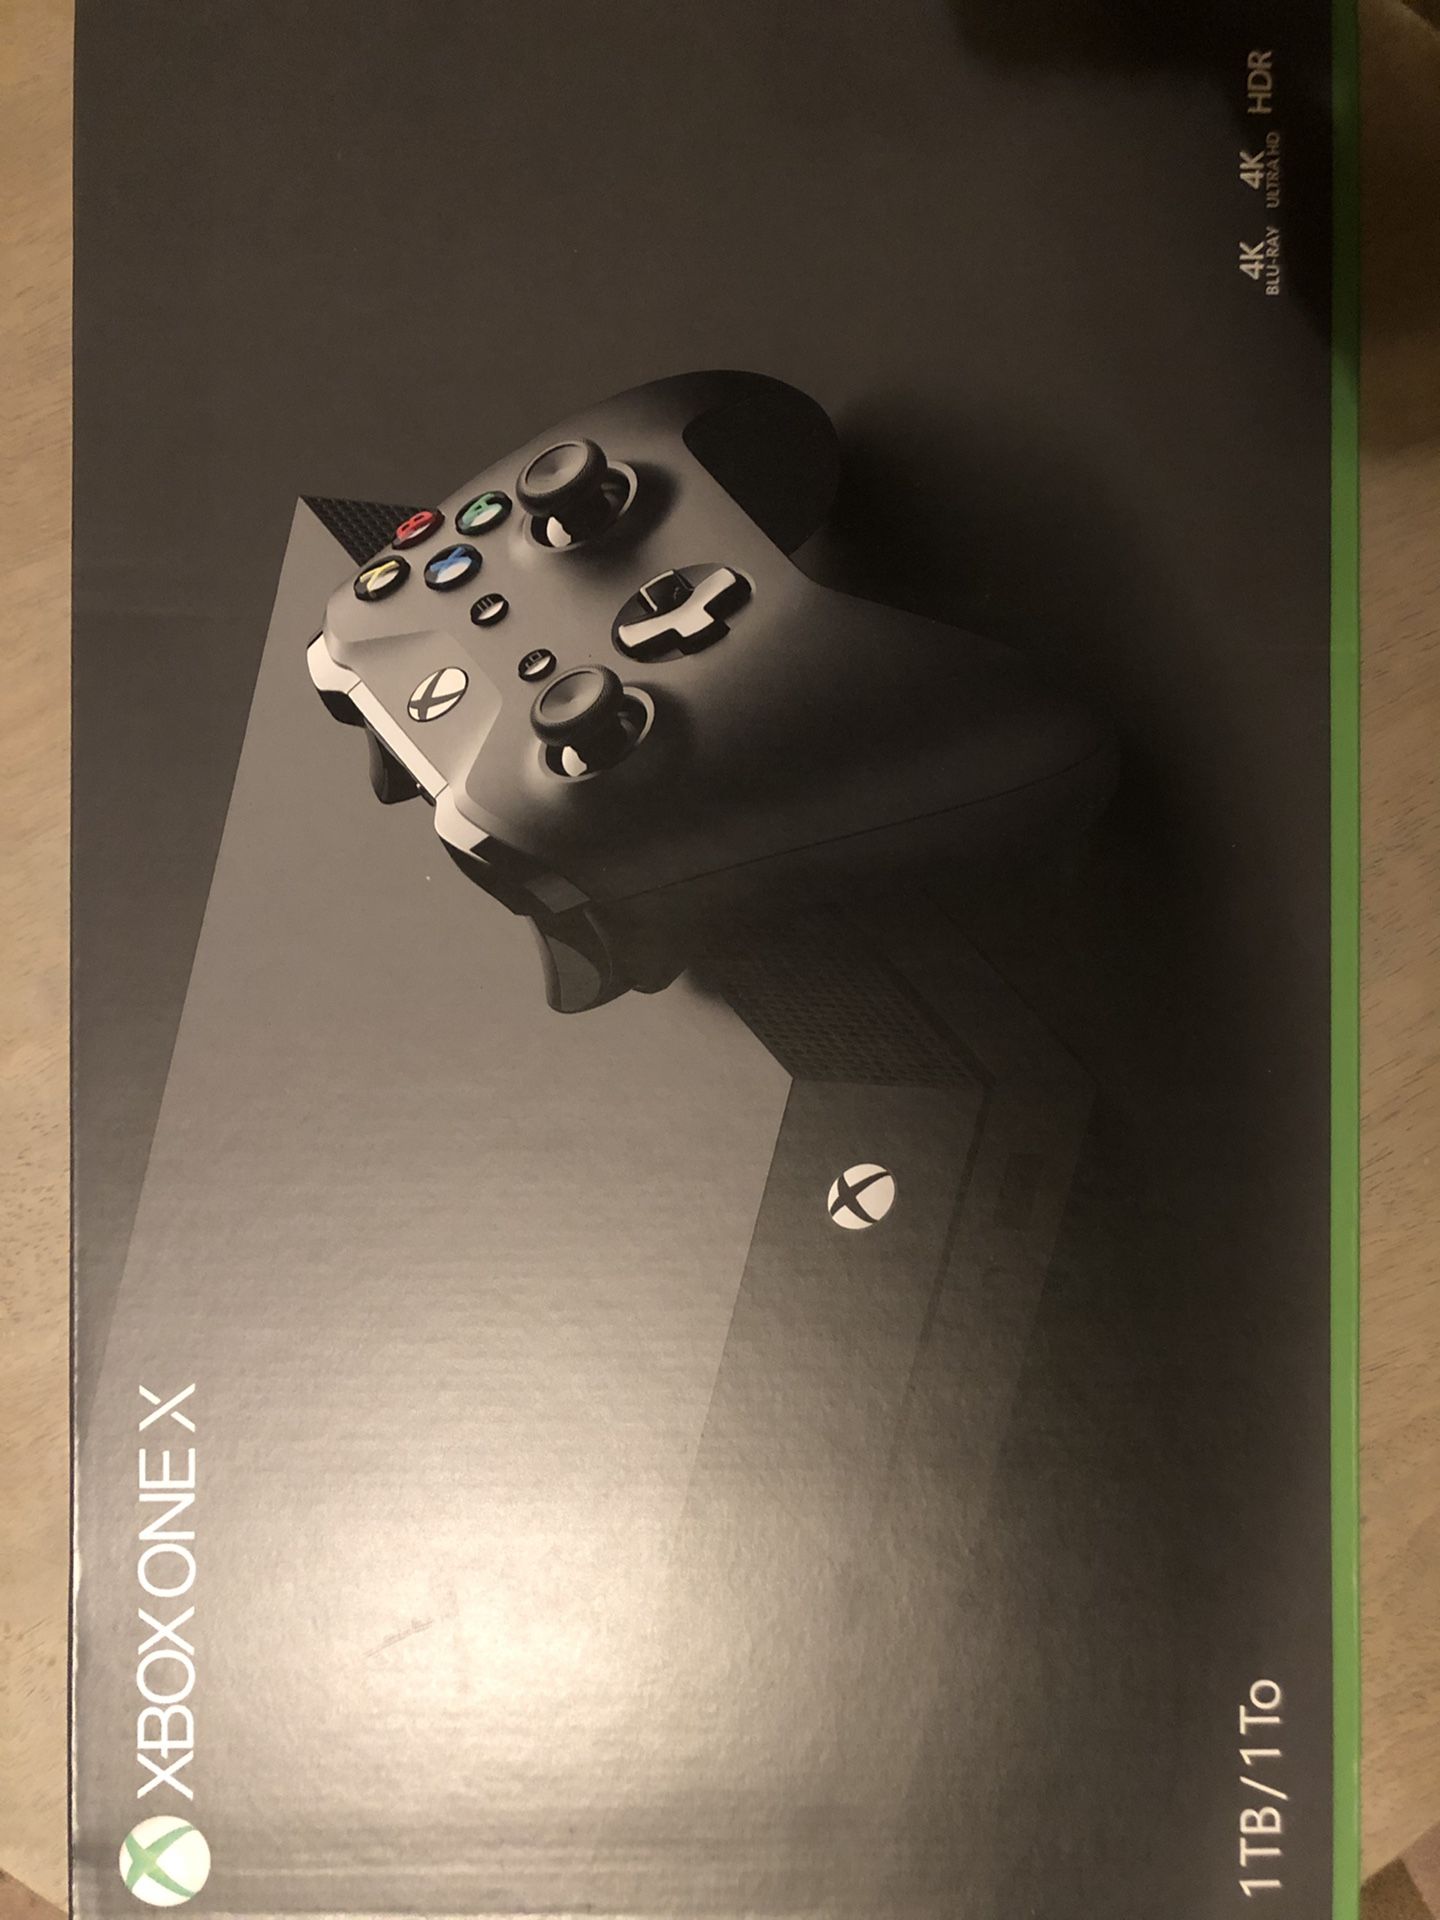 Brand New XBOX ONE X